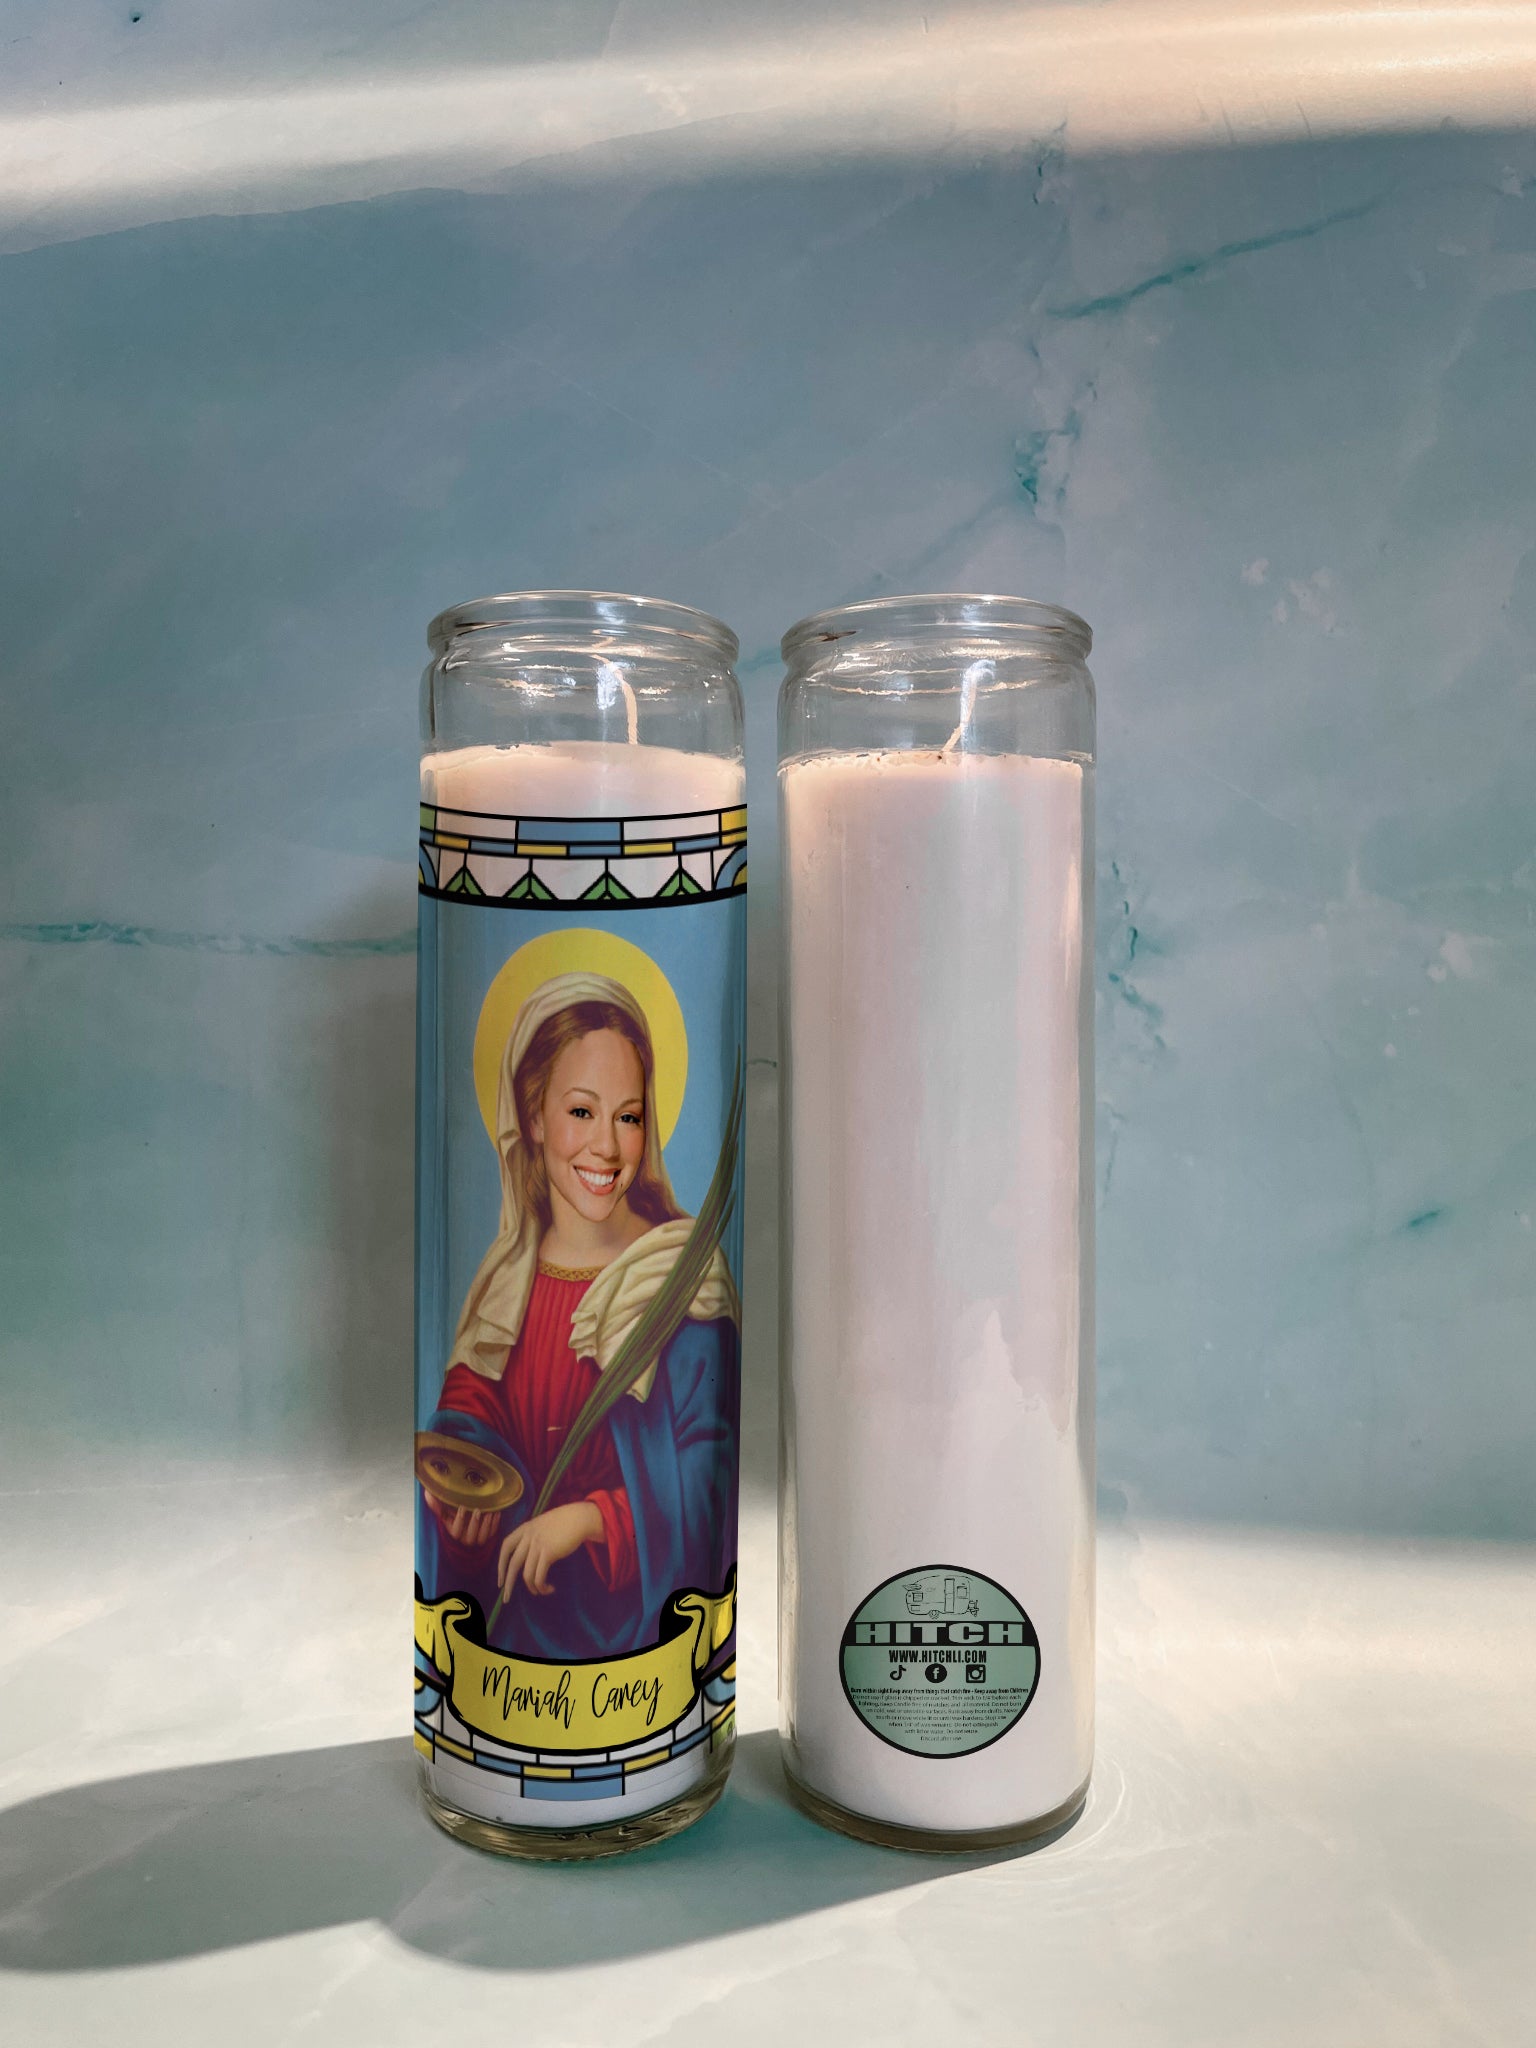 Mariah Carey Original Prayer Candle